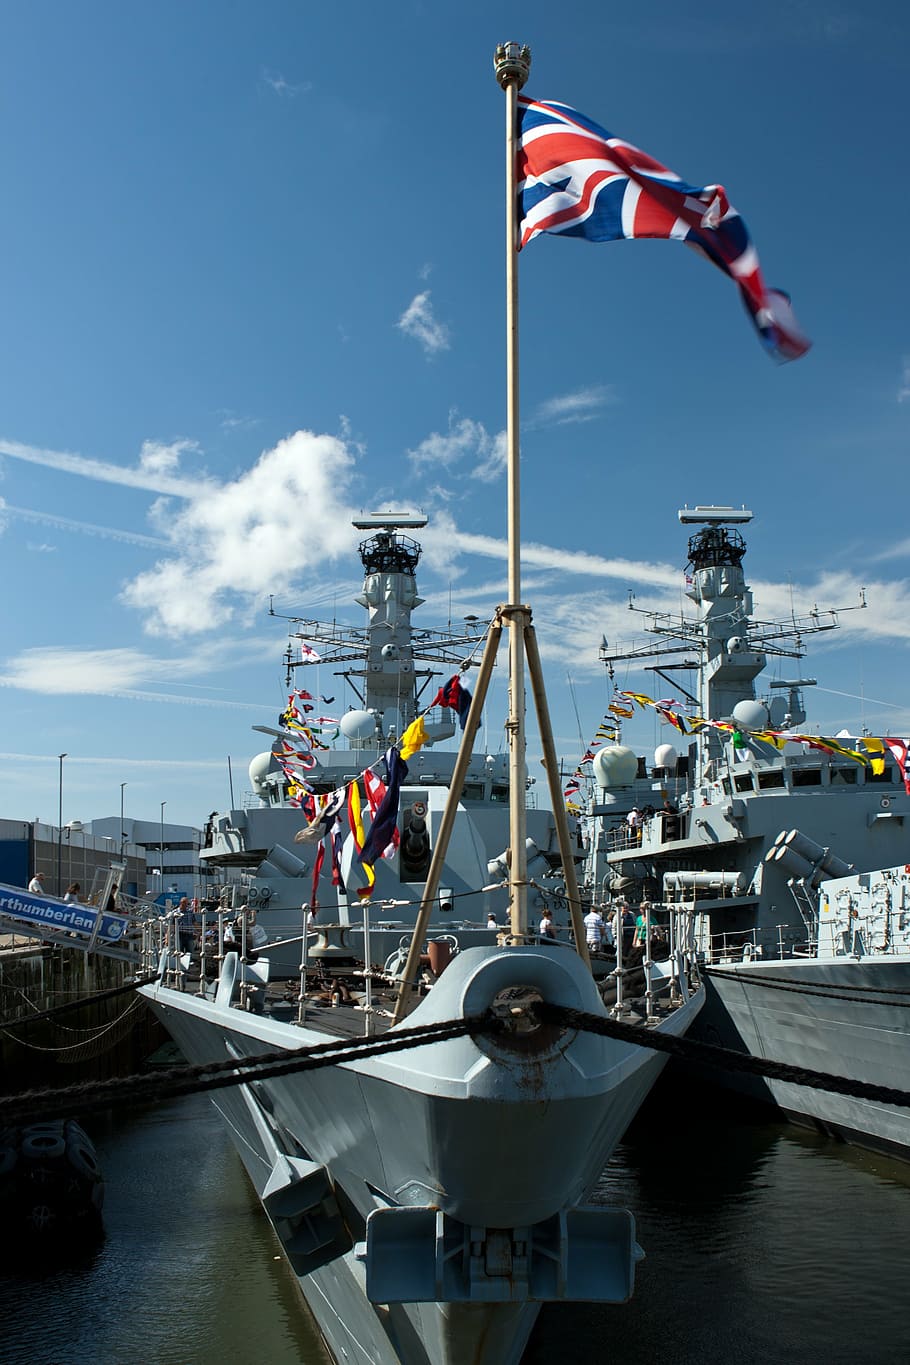 hms northumberland, fragata de la marina real, 900 toneladas, hms chatham junto, día abierto de la marina real, devonport, plymouth, bandera, patriotismo, cielo